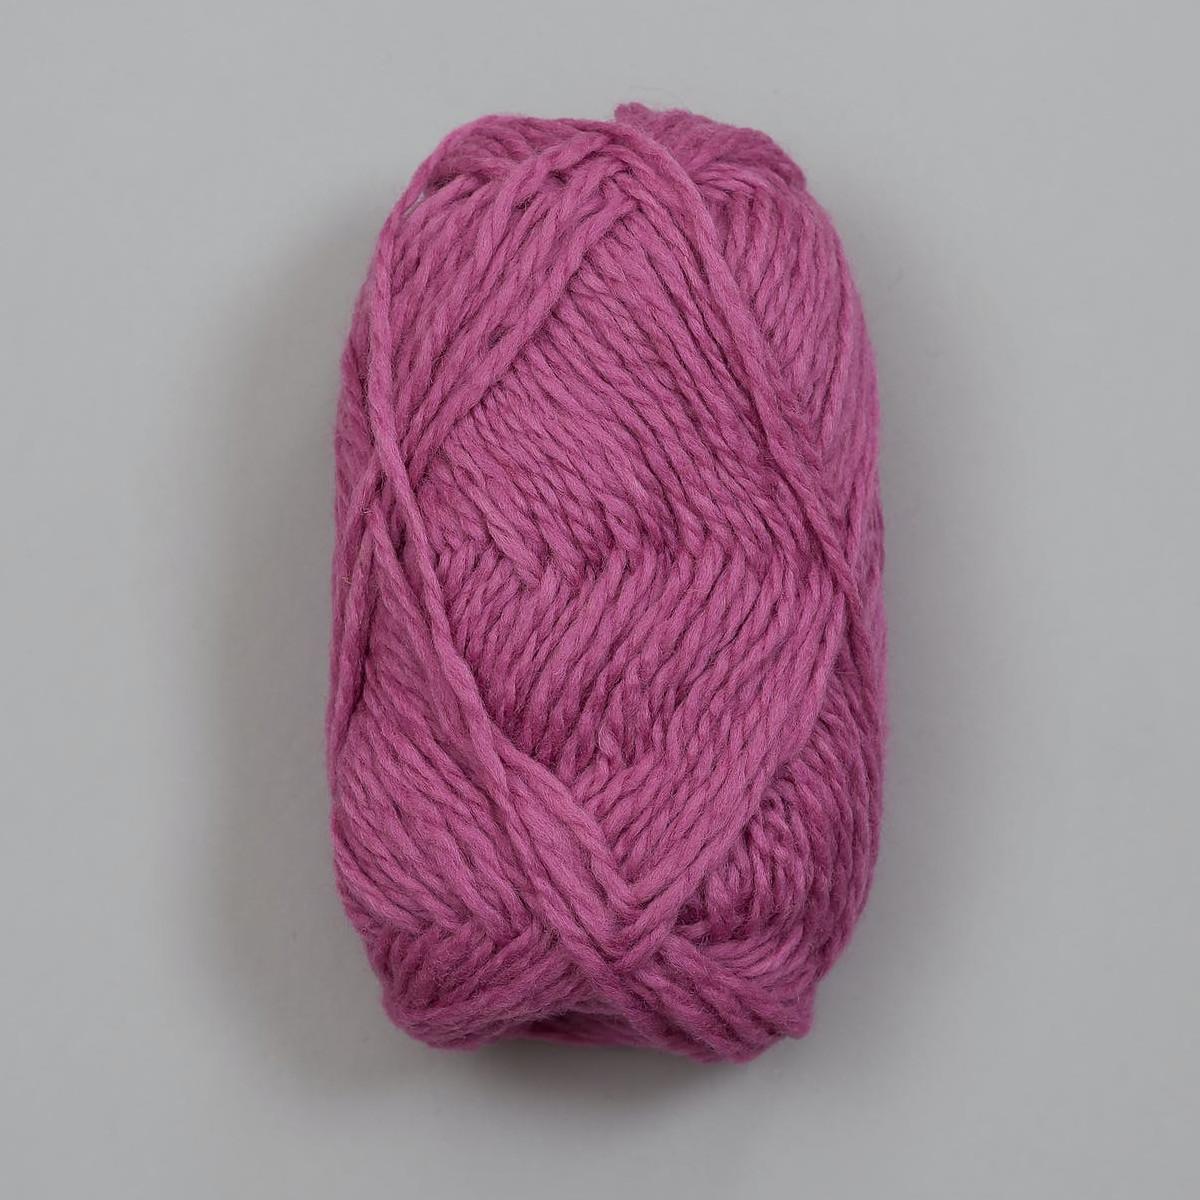 Vams - Mørk rosa / Dunkelrosa (65)